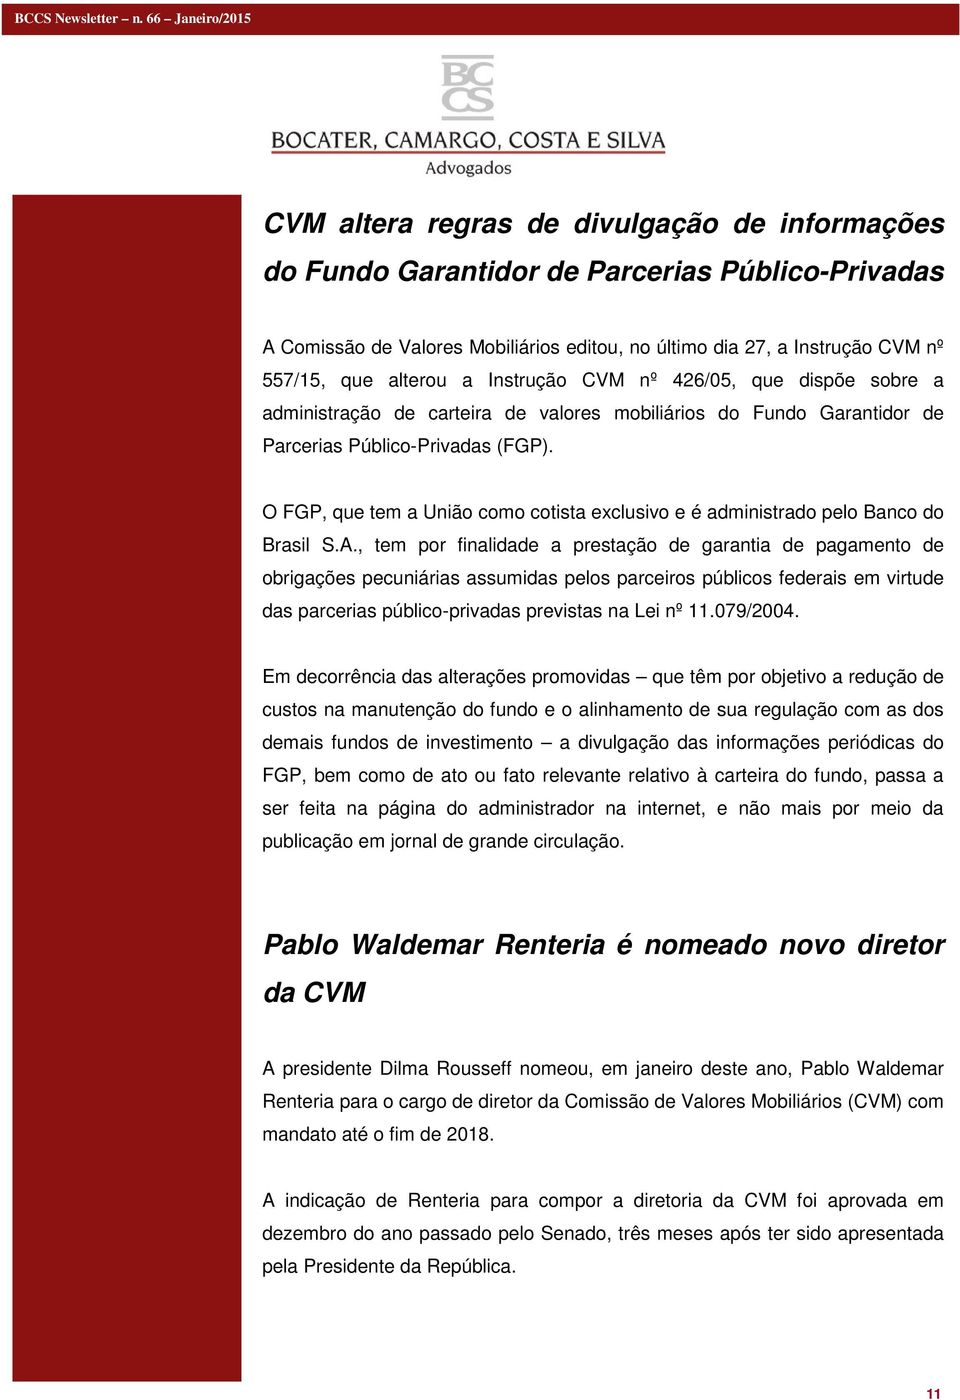 O FGP, que tem a União como cotista exclusivo e é administrado pelo Banco do Brasil S.A.